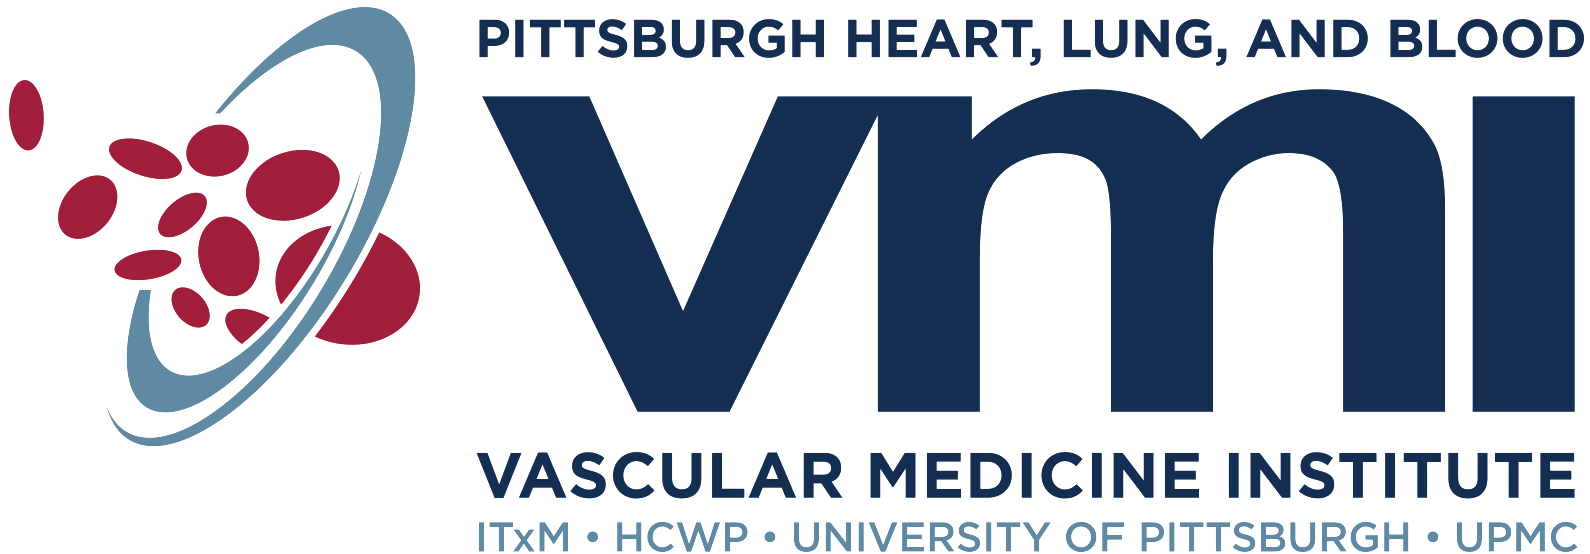 Vascular Medicine Institute